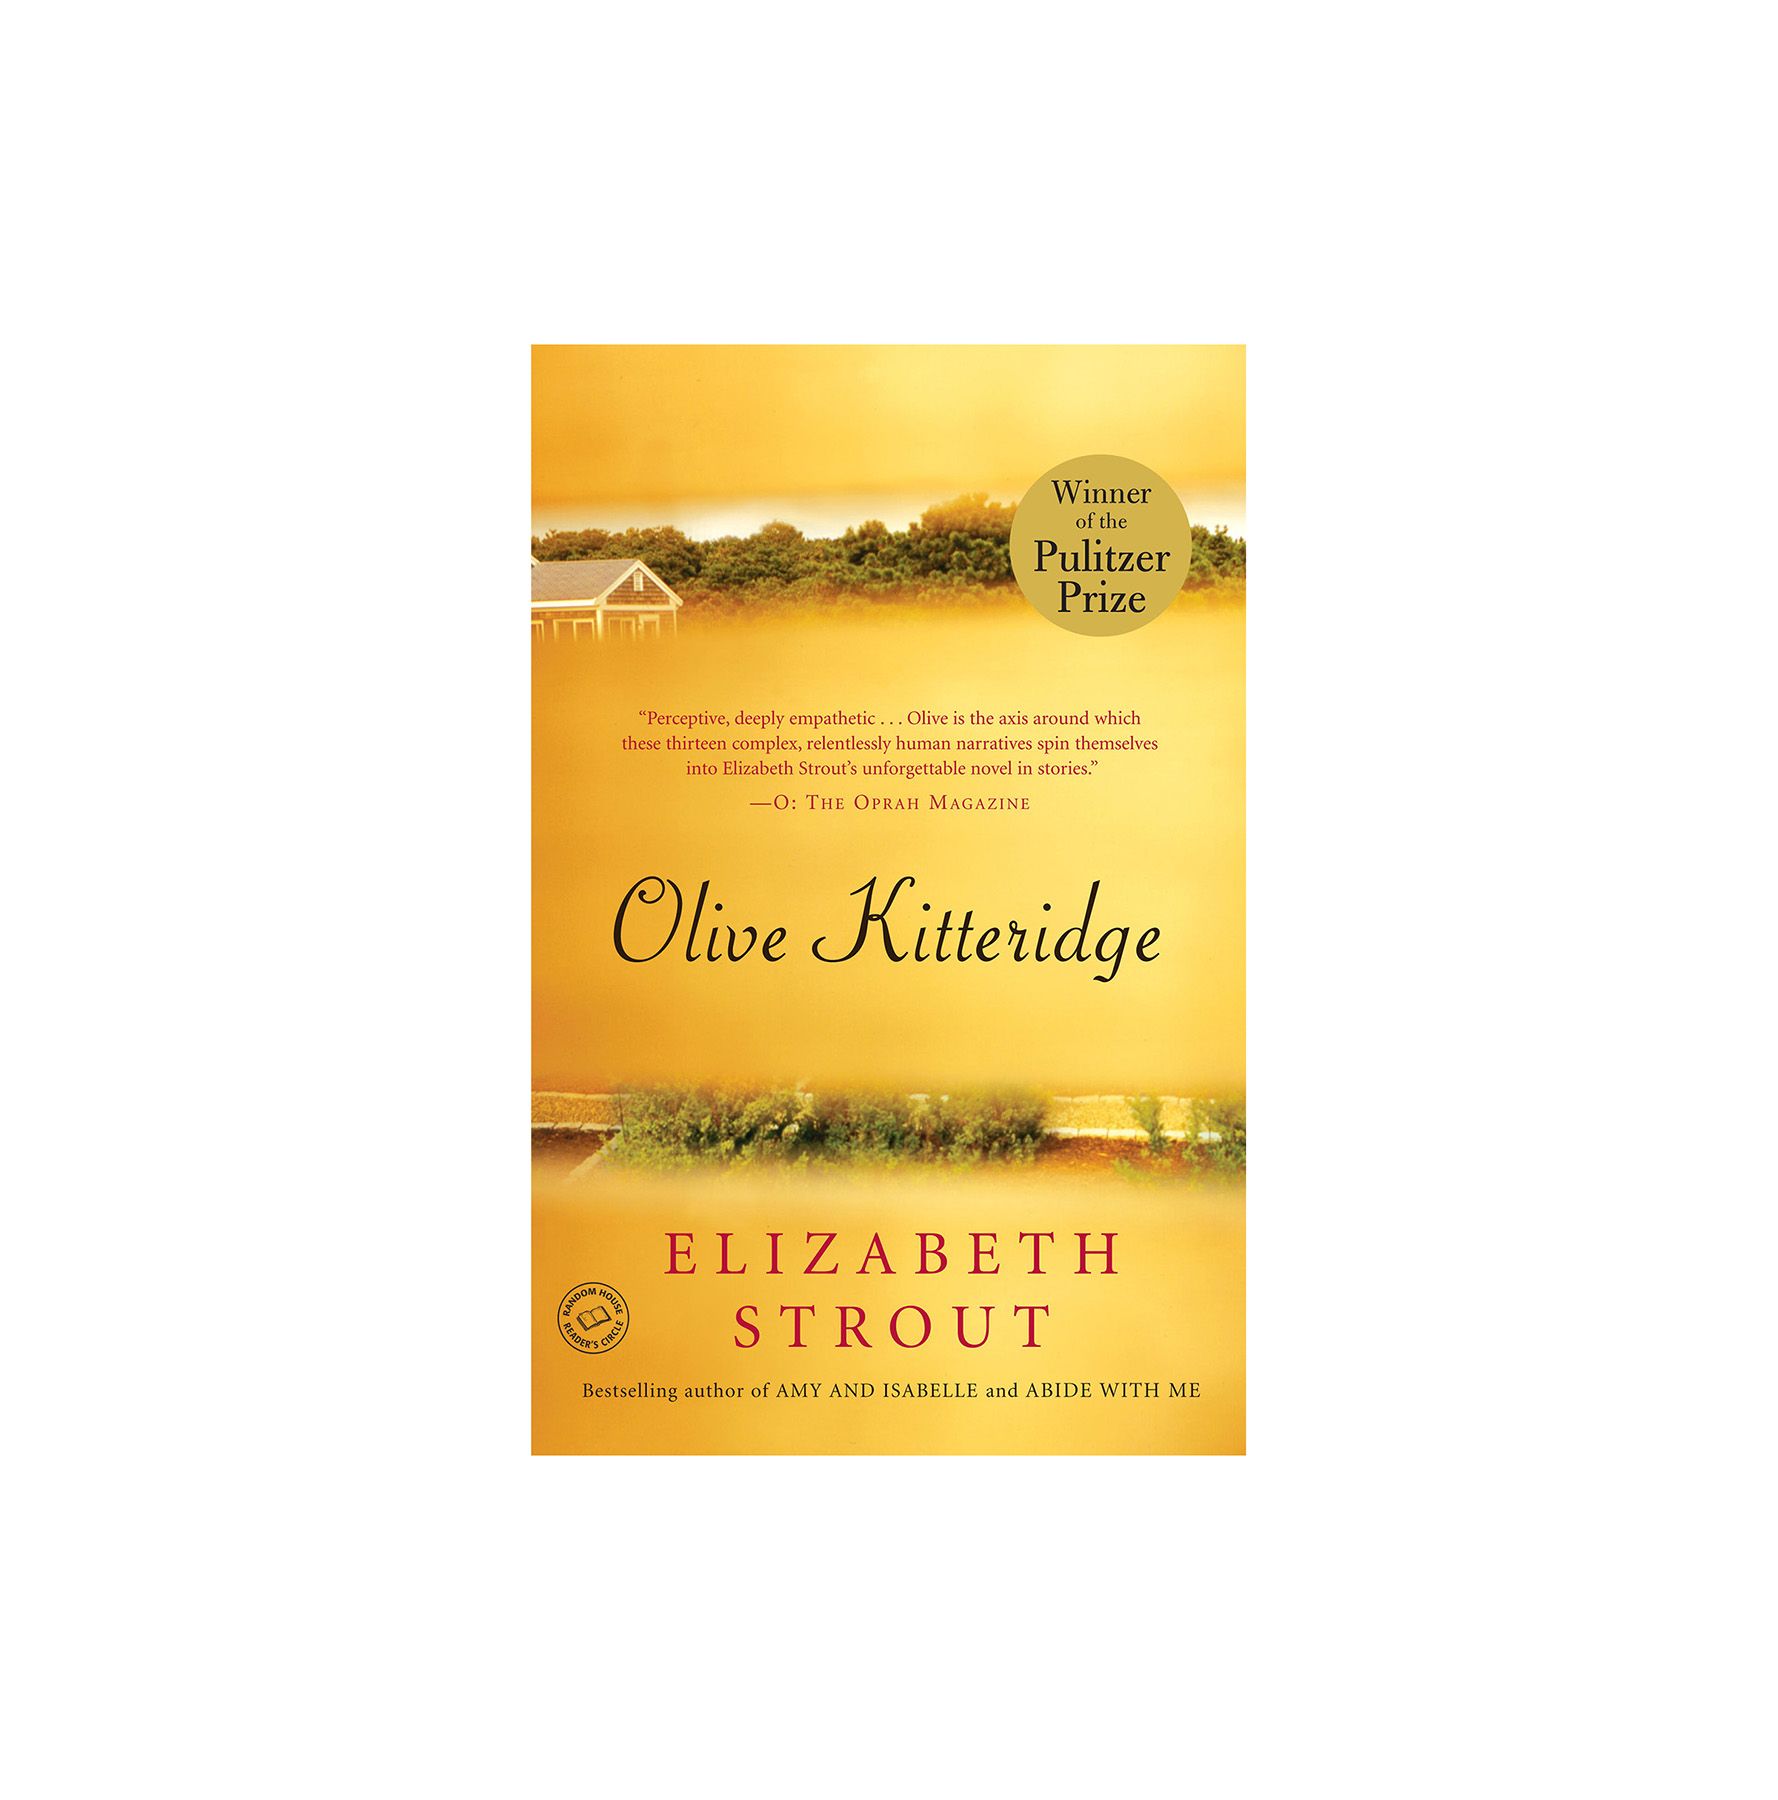 Olive Kitteridge, de Elizabeth Strout